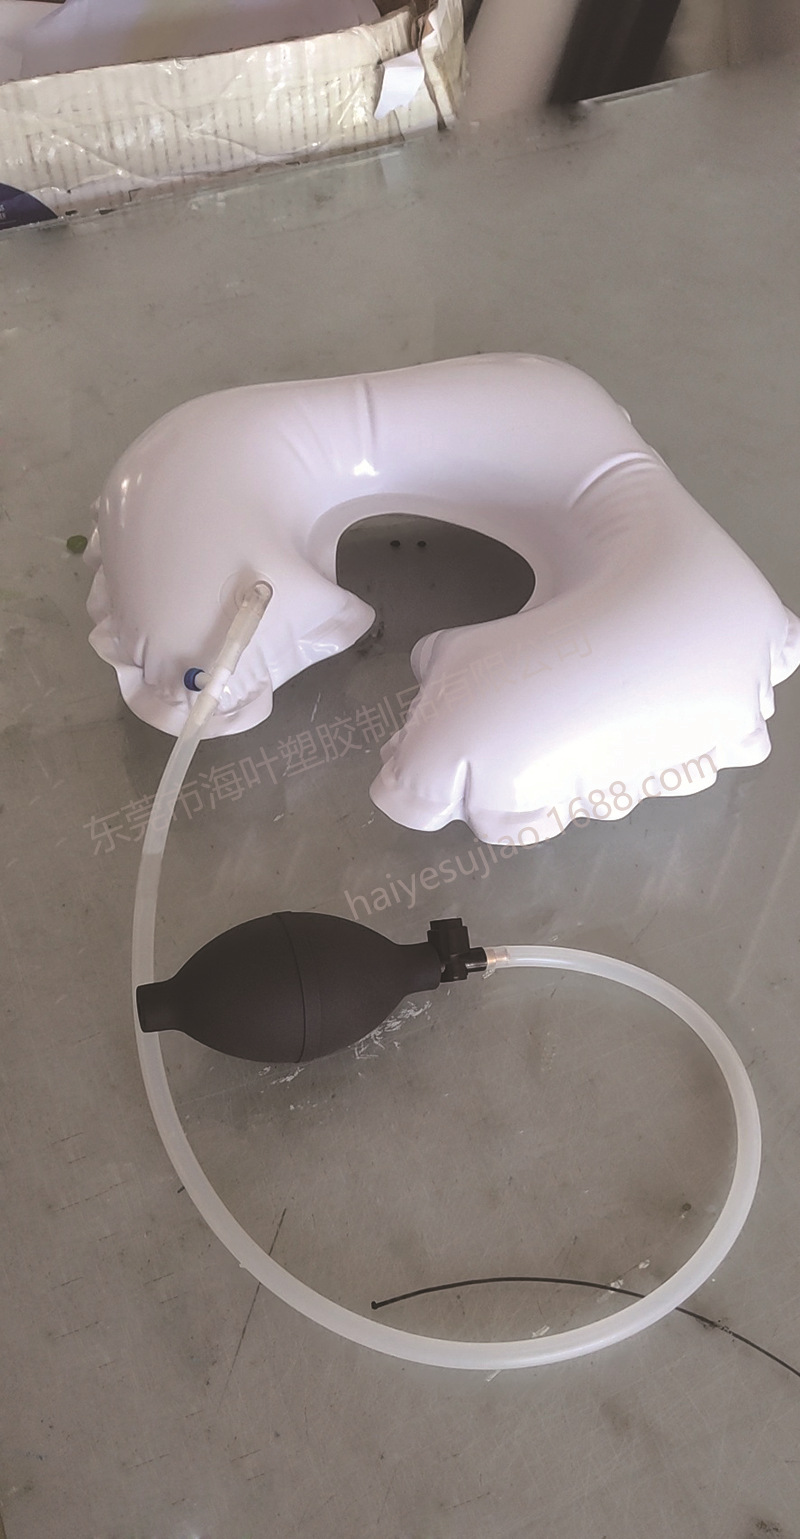 工厂TPU手捏充气气囊 护理充气枕垫 TPU手捏进气球